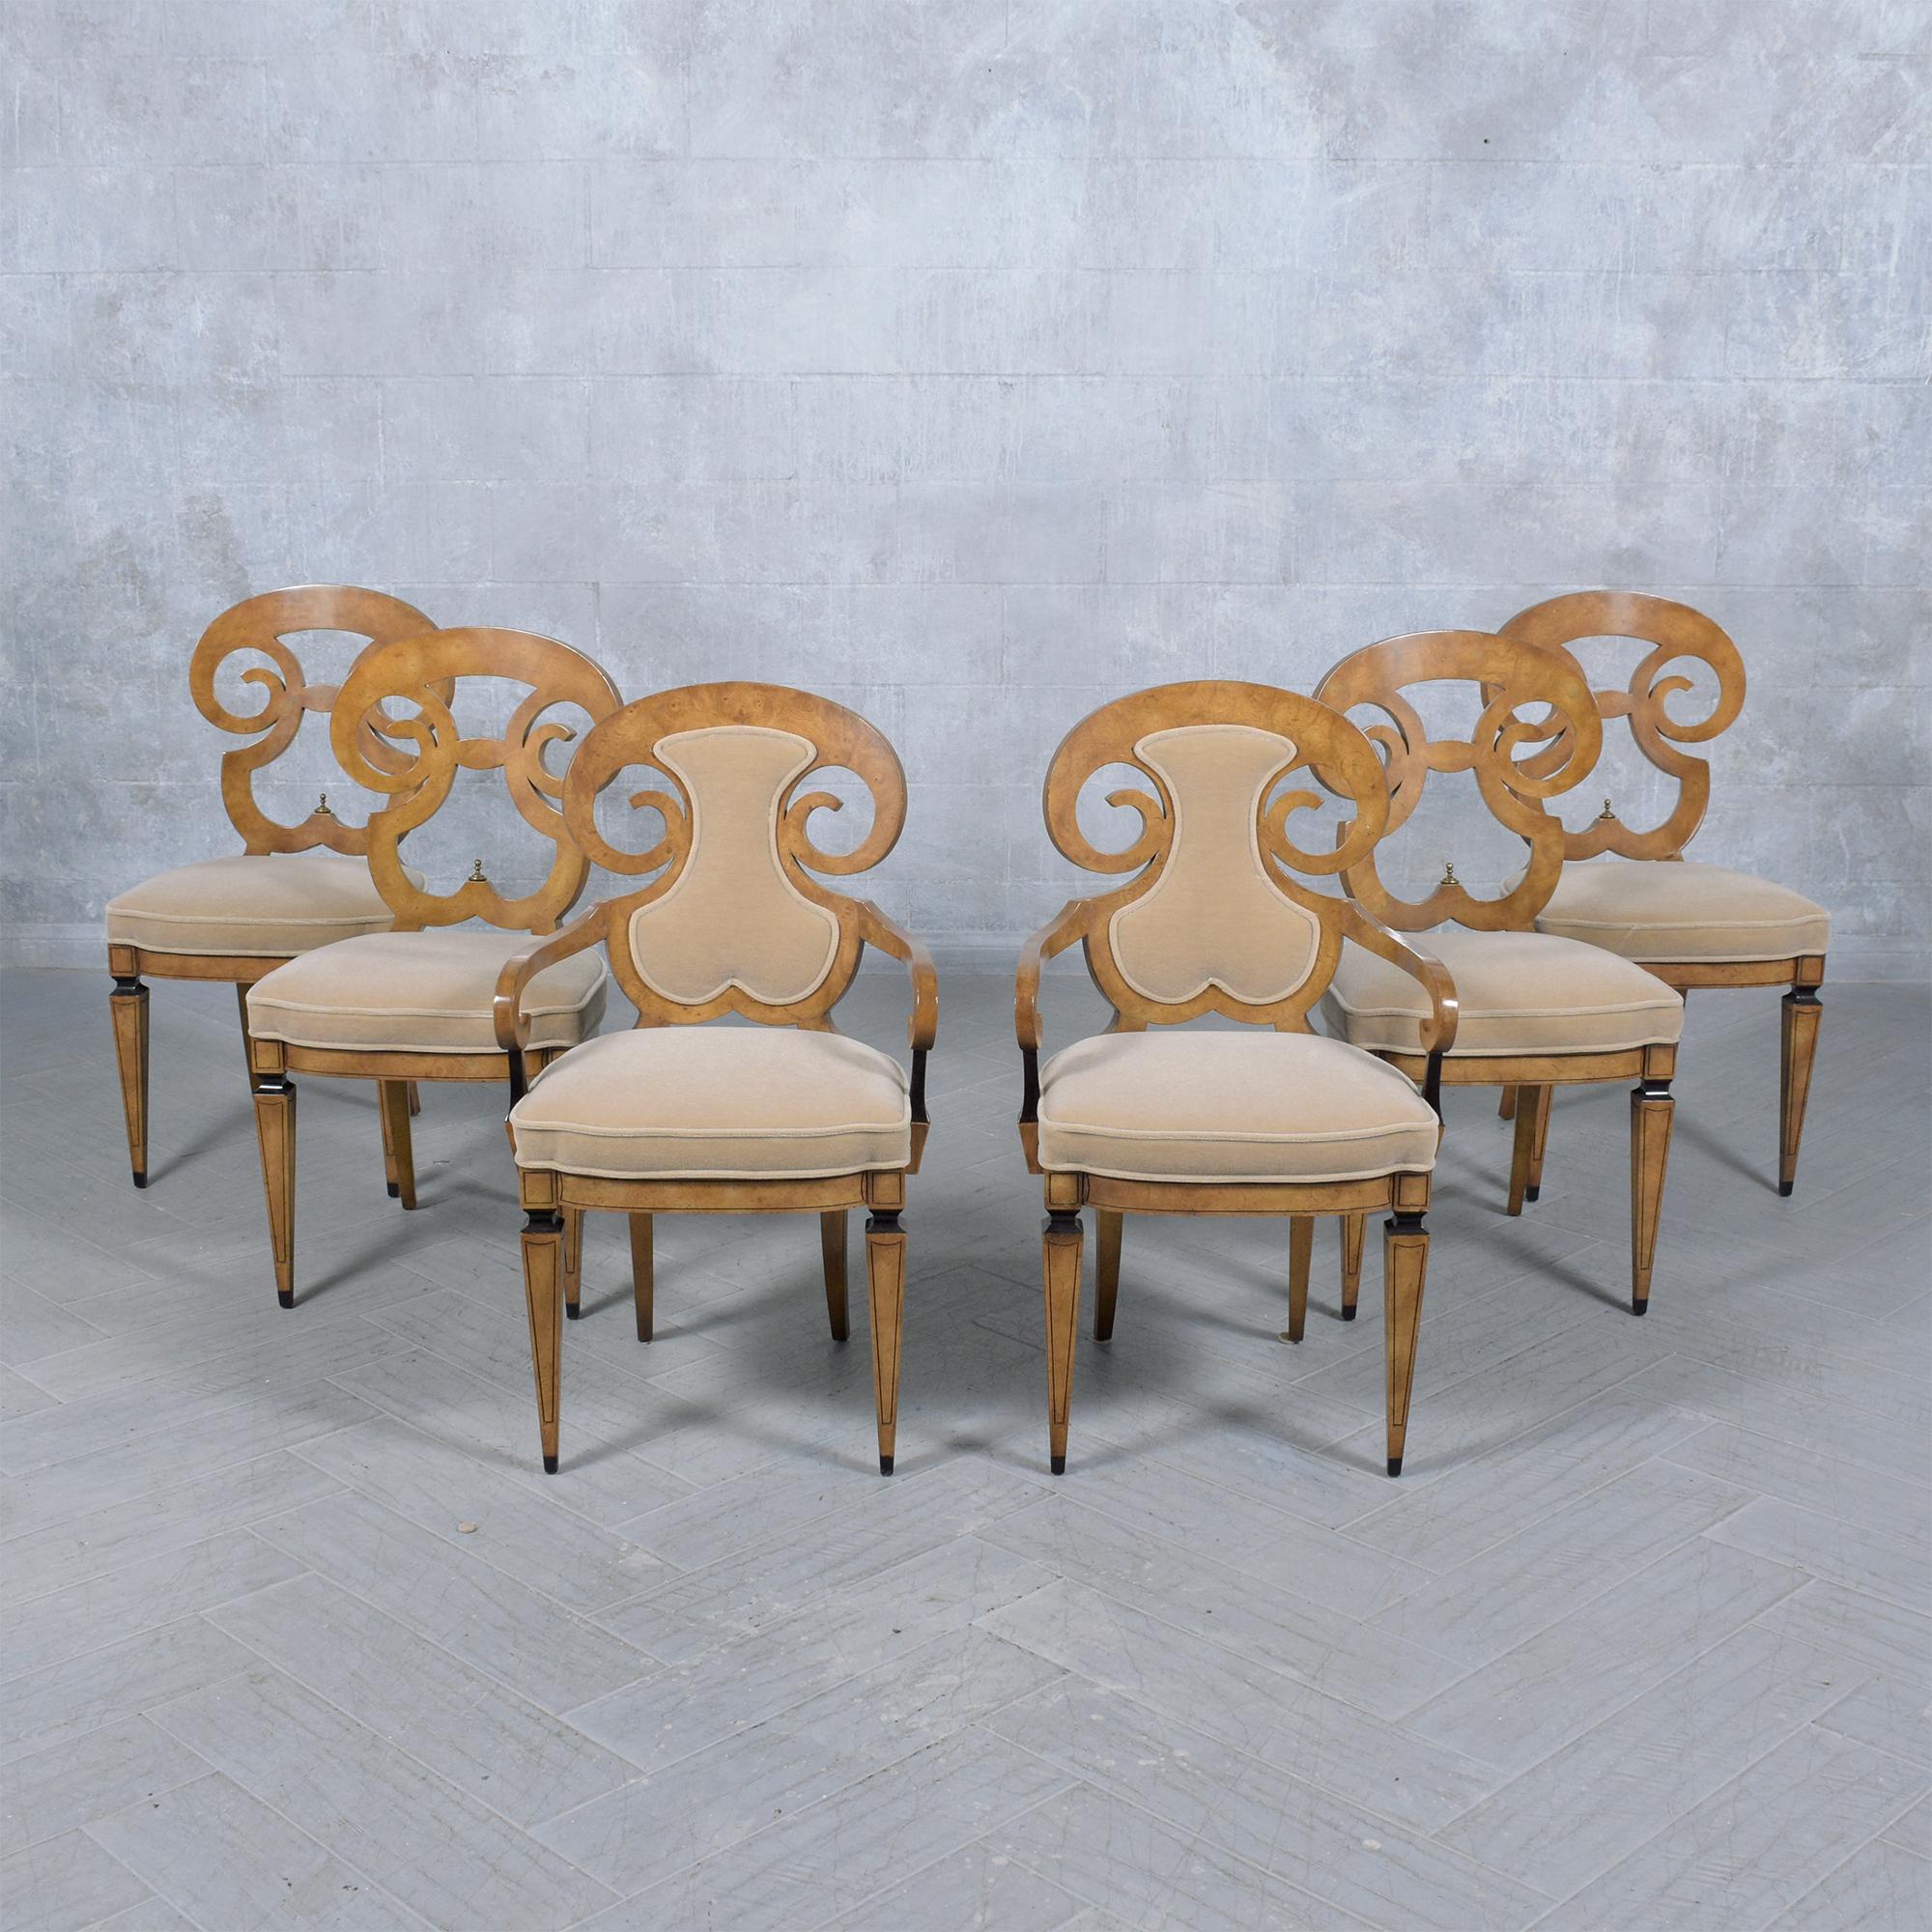 Tauchen Sie ein in die Welt der Eleganz aus der Mitte des Jahrhunderts mit unserem wunderschön restaurierten fünfteiligen Esszimmerstuhl-Set, das der ikonische Renzo Rutili für Johnson Furniture entworfen hat. Jeder Stuhl dieser exquisiten